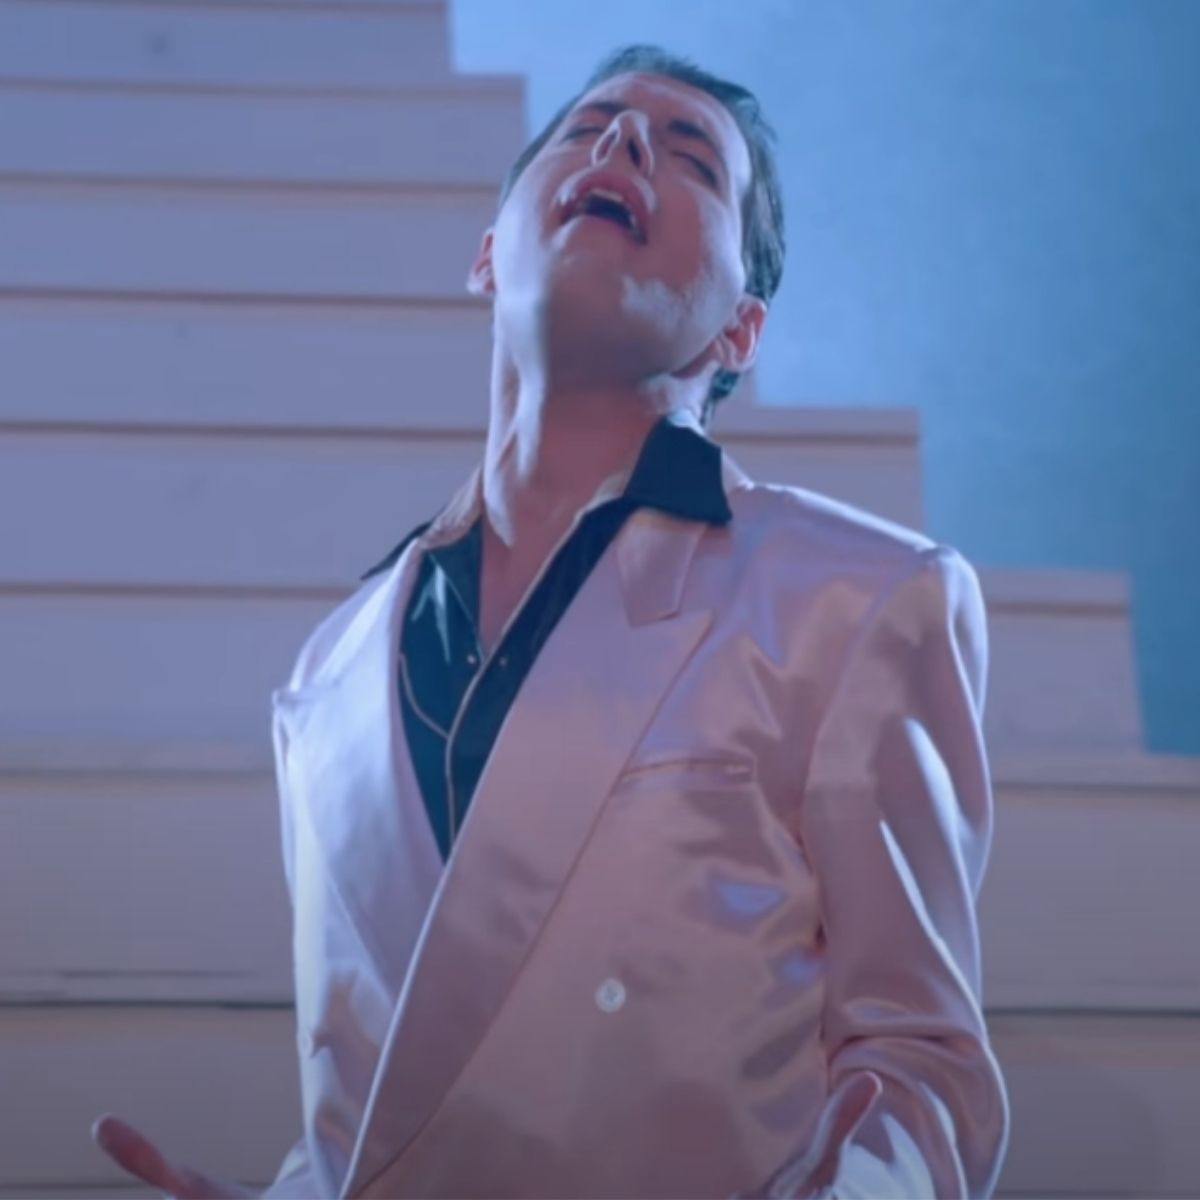 Freddie Mercury in The Great Pretender video